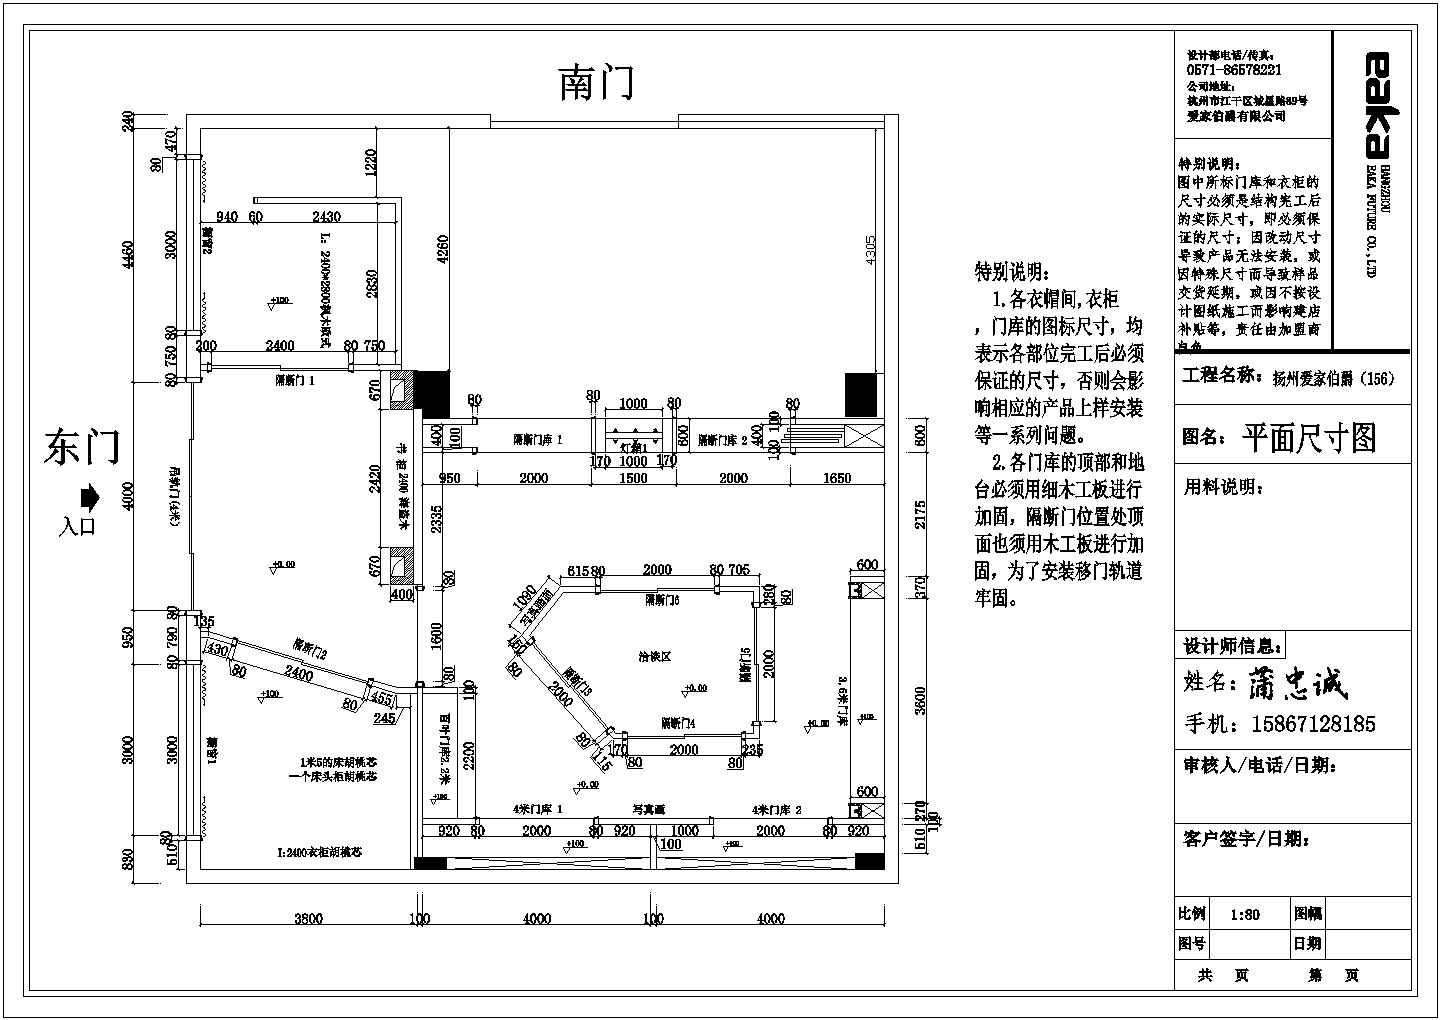 扬州单层框架结构家具专卖店室内装修设计方案图